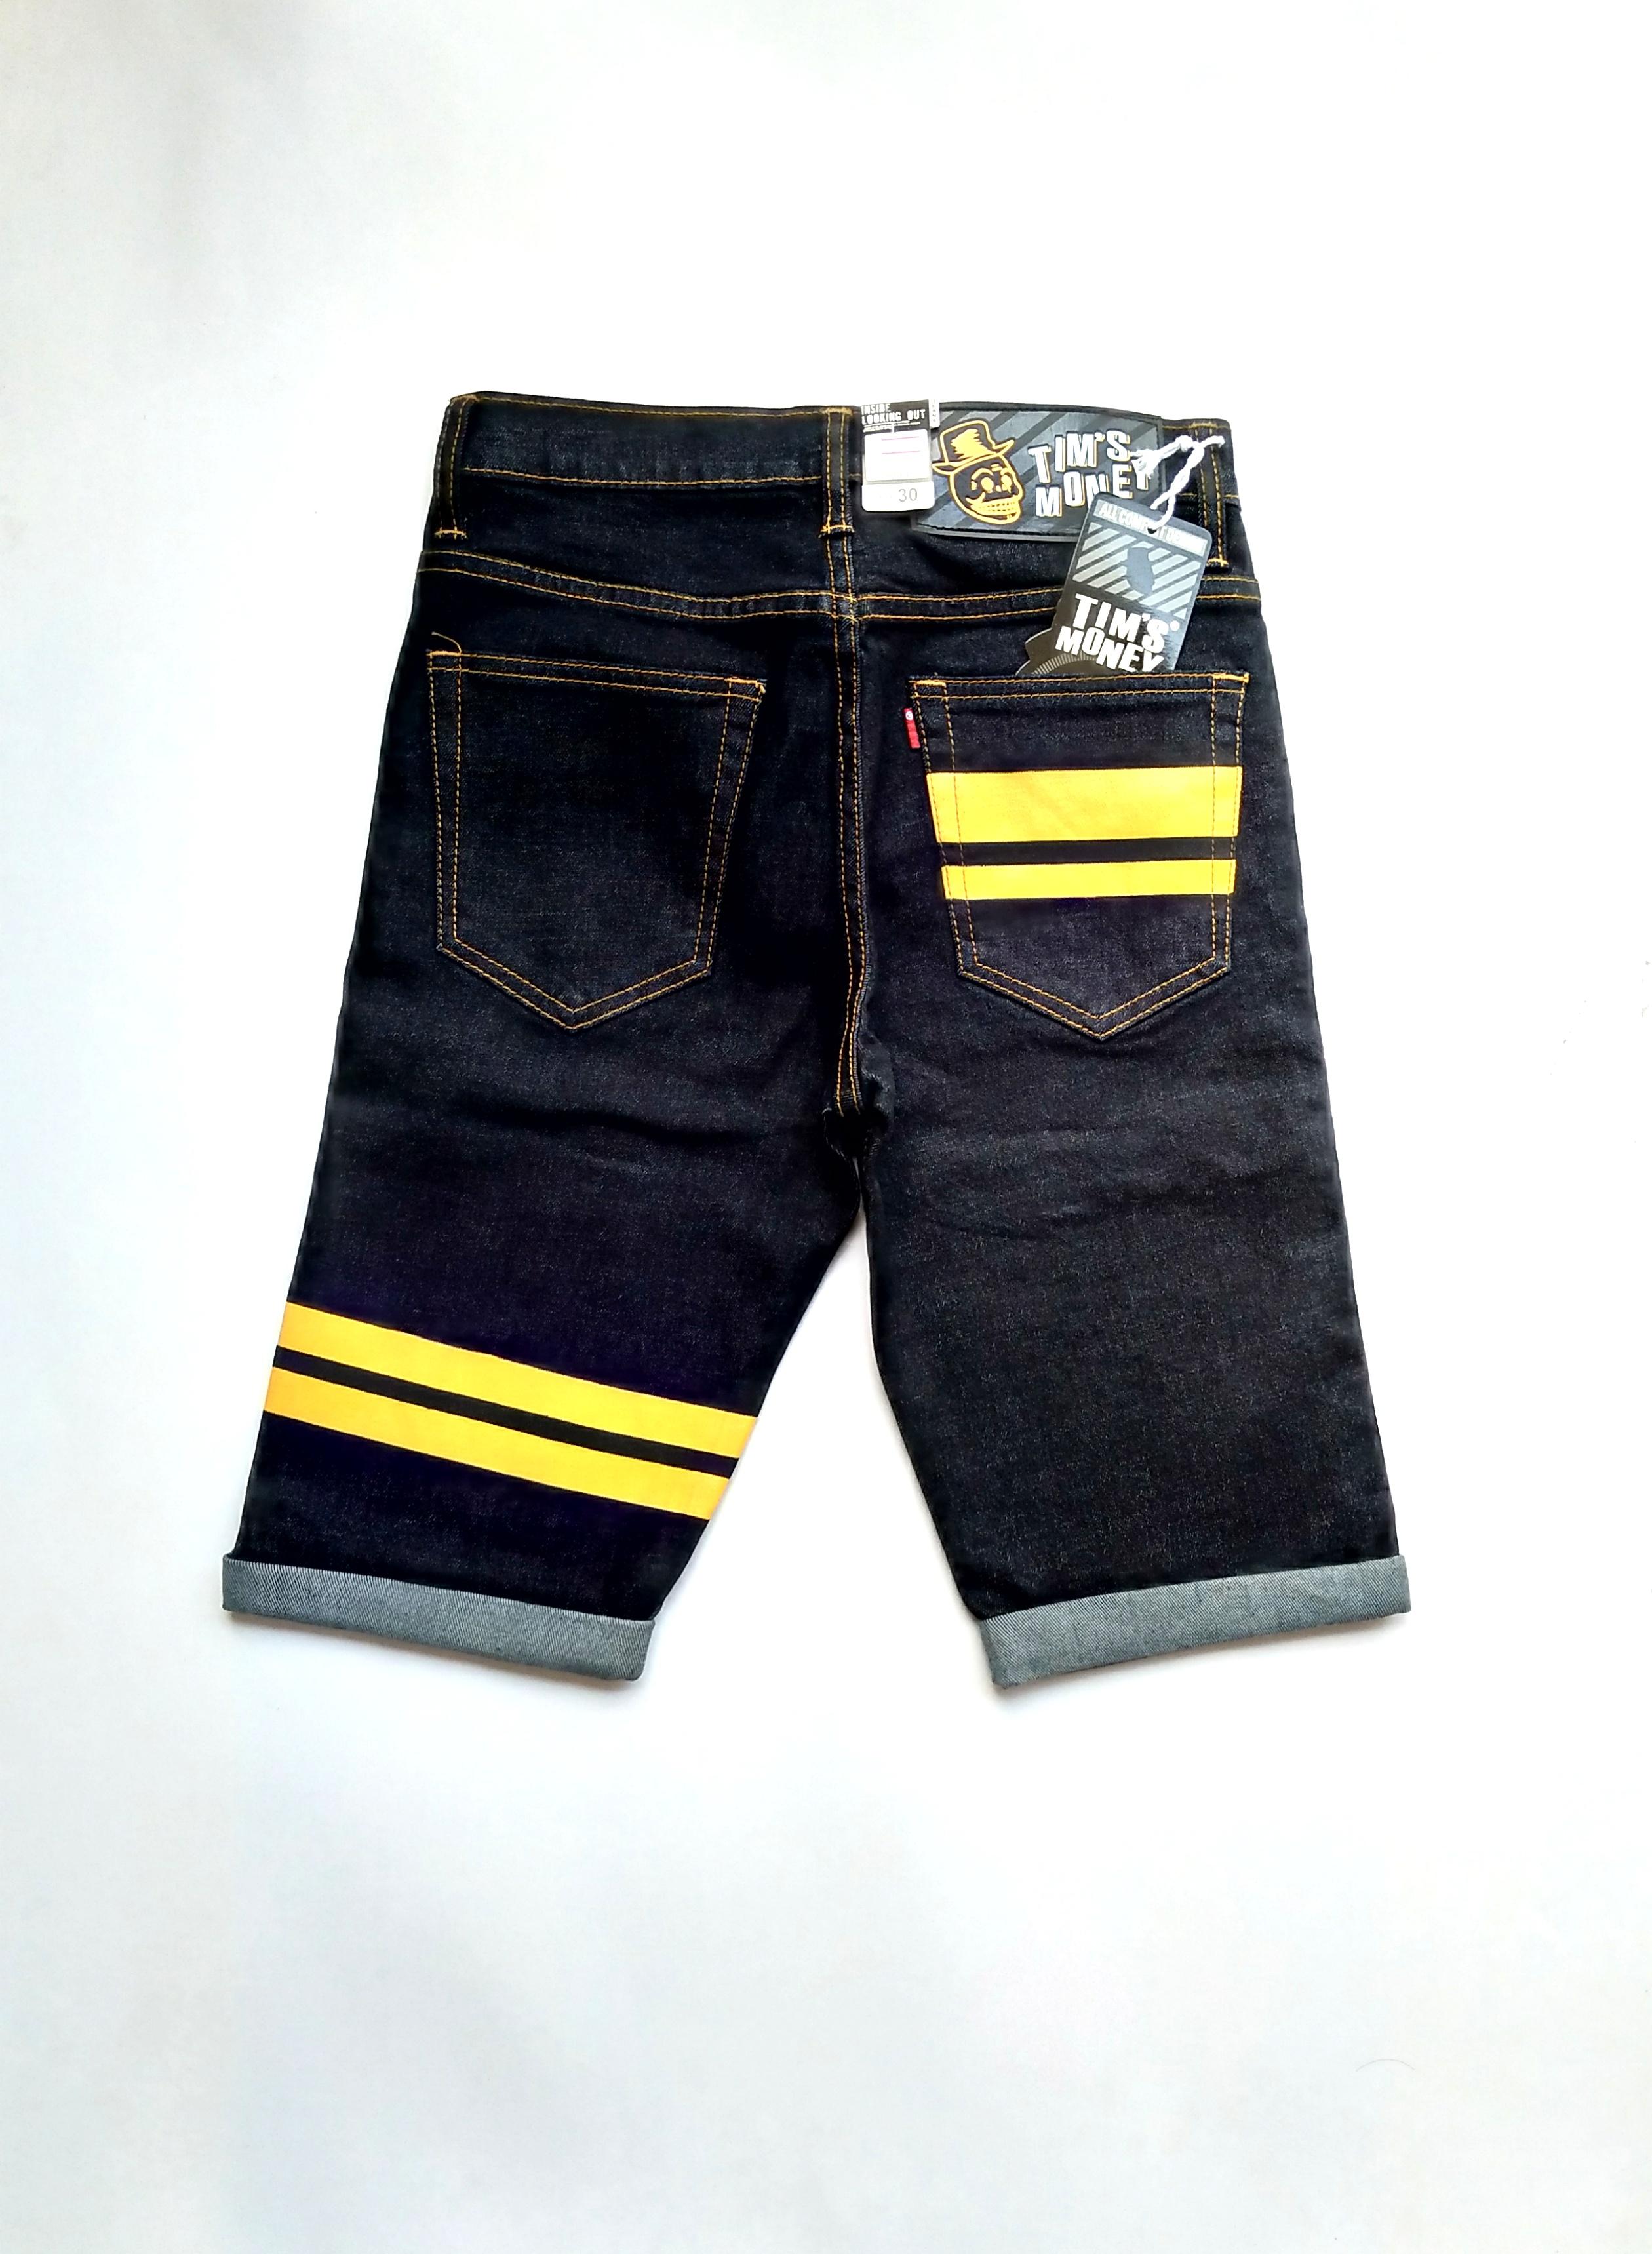 jeans กางเกงขาสั้น กางเกงยีนส์ขาสั้น ผู้ชายผ้ายืด กึ่งเดฟกึ่งกระบอกเล็ก คาดแถบสีเหลือง ซิป Size 28-36